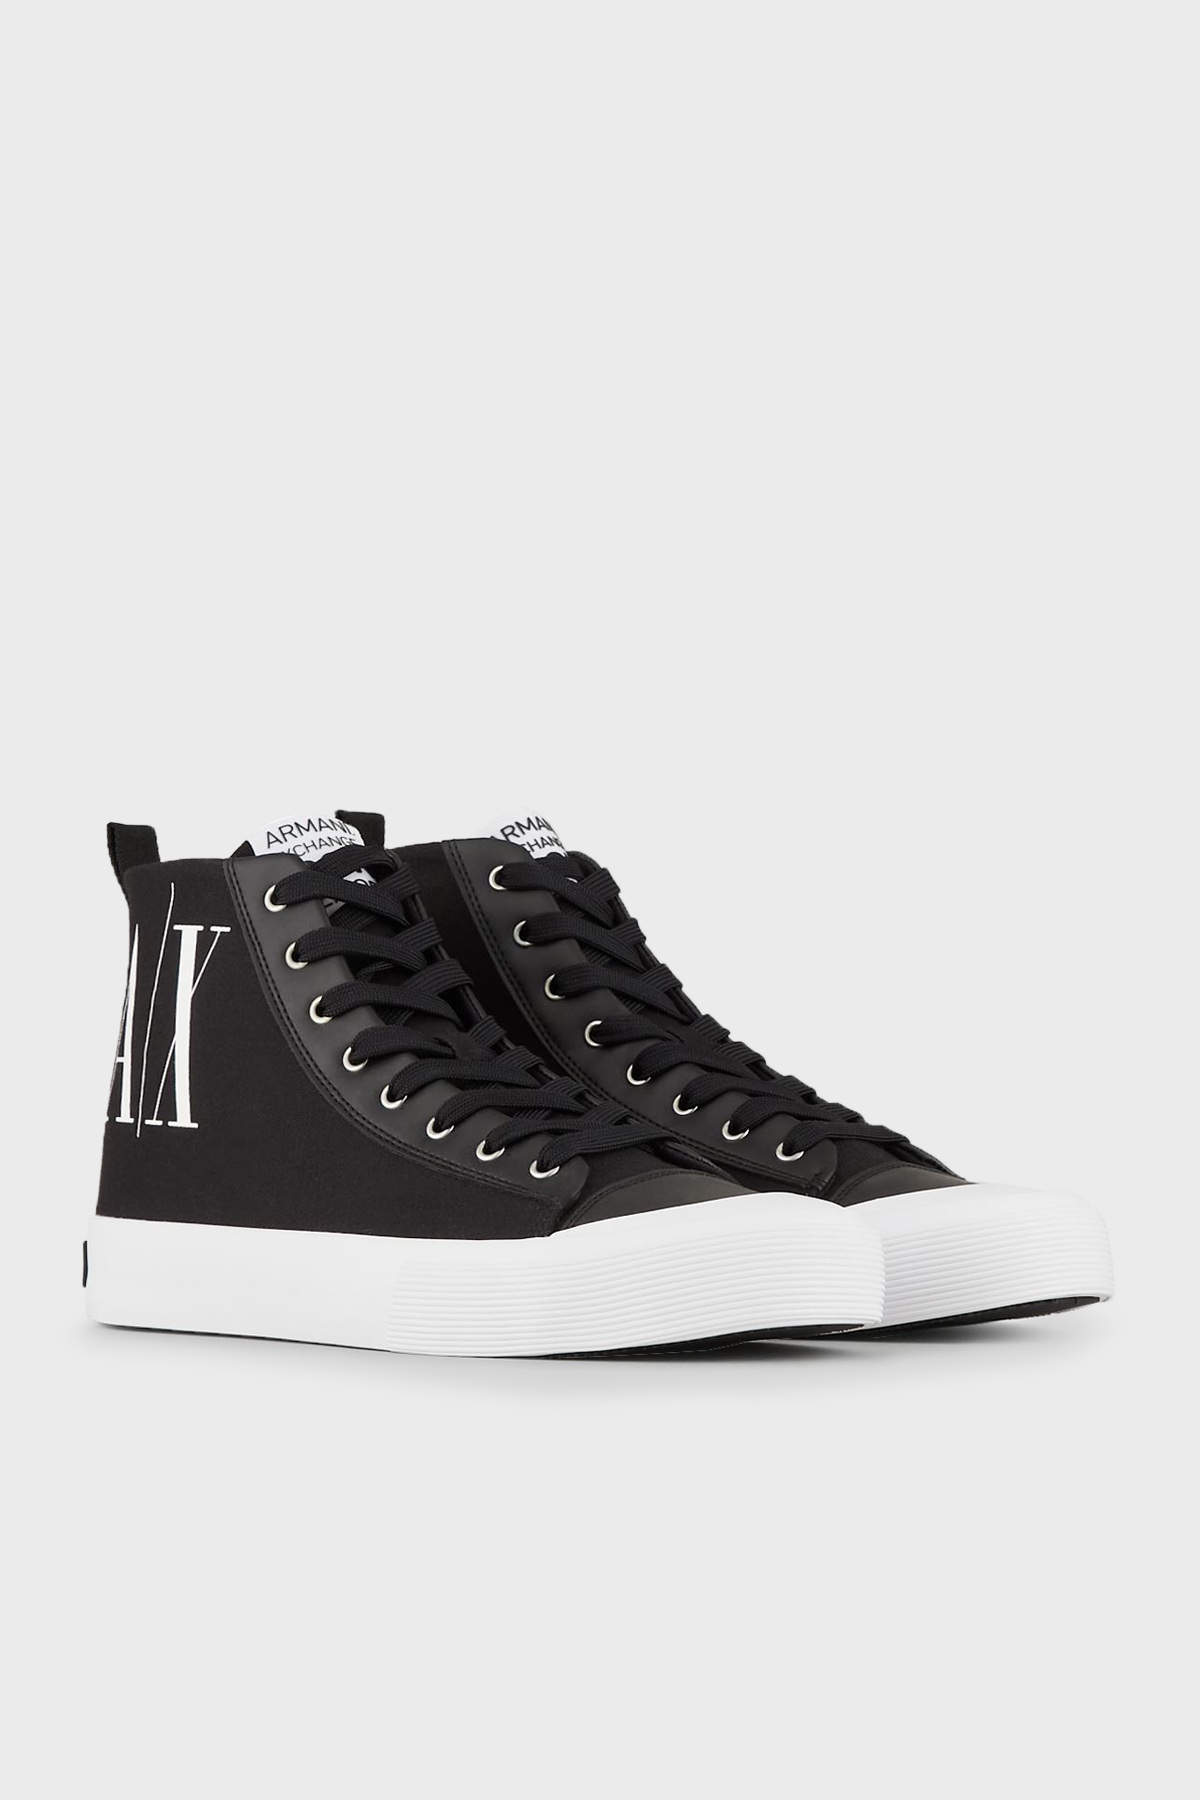 Armani Exchange Bilekli Sneaker Erkek Ayakkabı XUZ039 XV591 00002 SİYAH